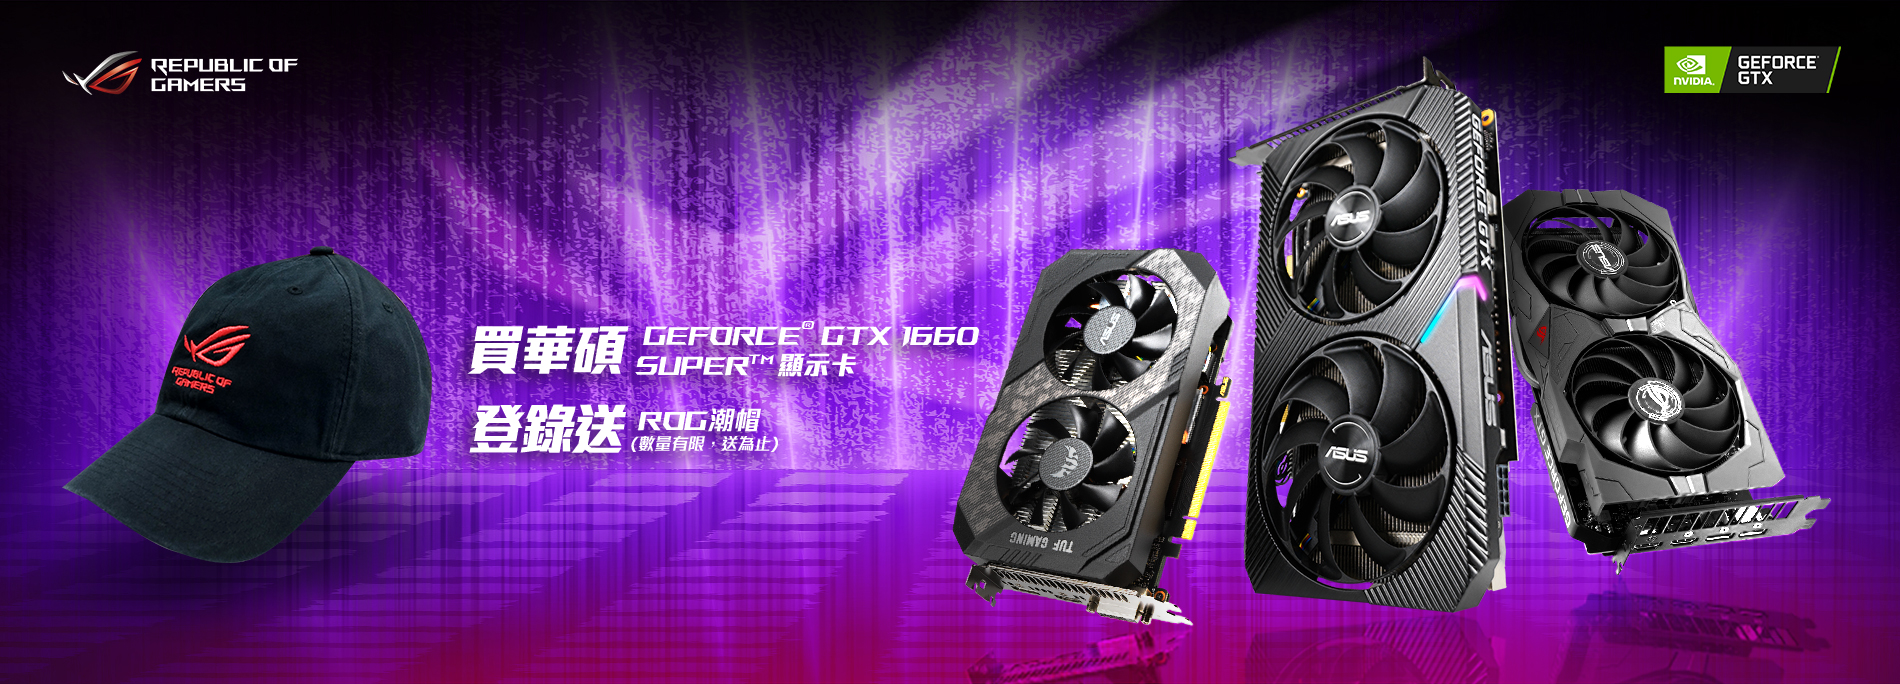 活動期間購買 華碩 GeForce® GTX 1660 SUPER  顯示卡，官網登錄送『ROG 潮帽 』(數量有限，送完為止)